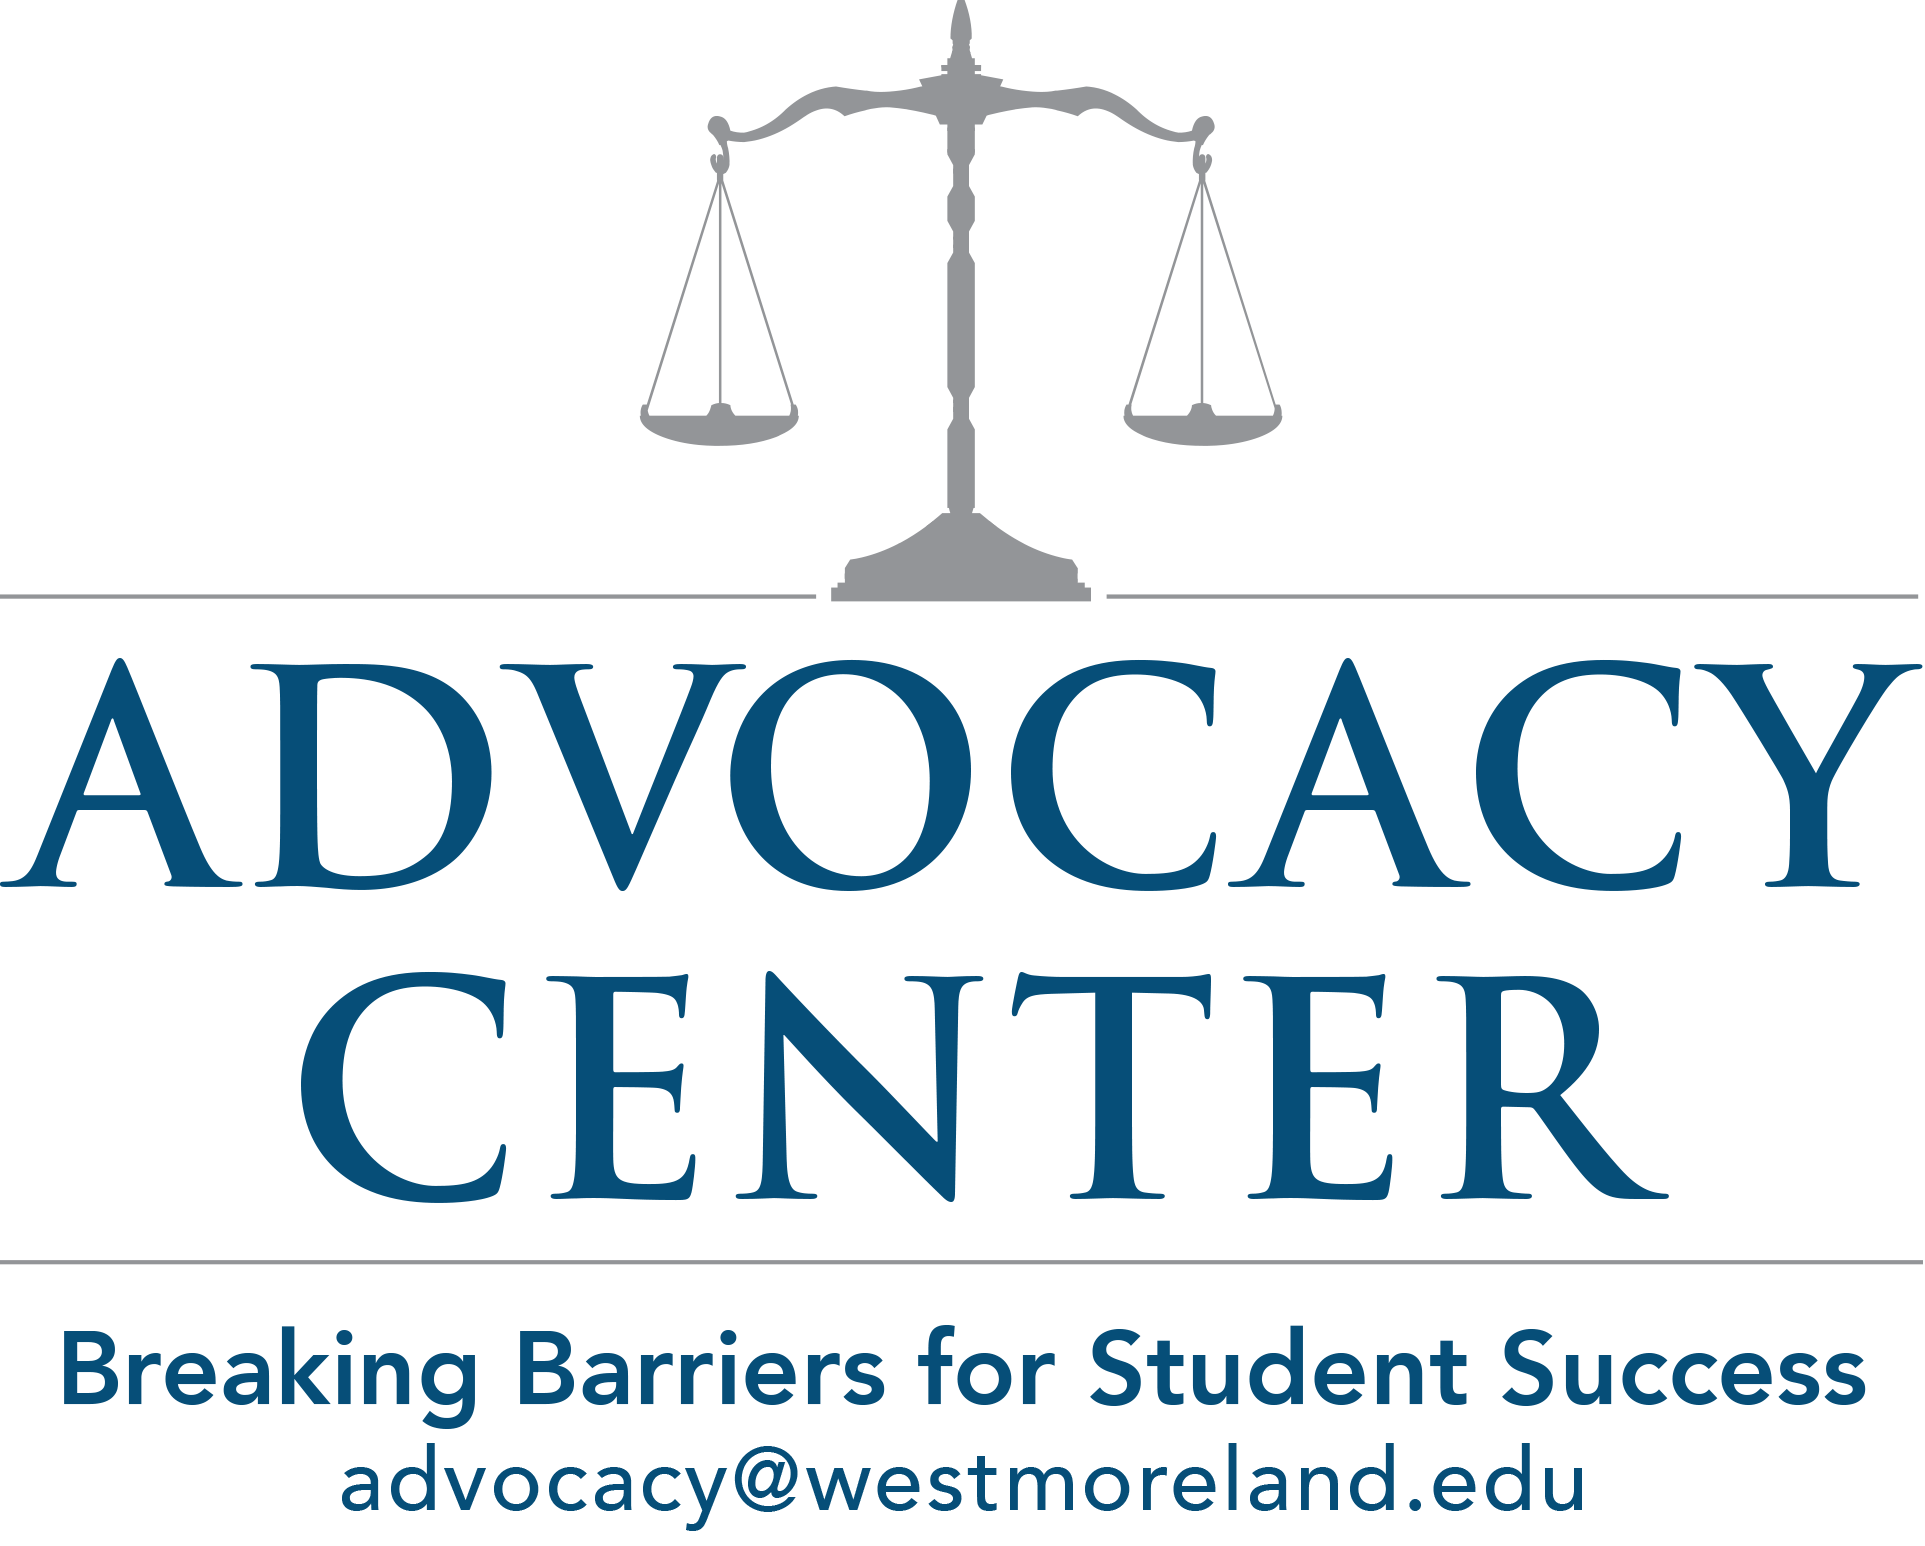 Advocacy Center